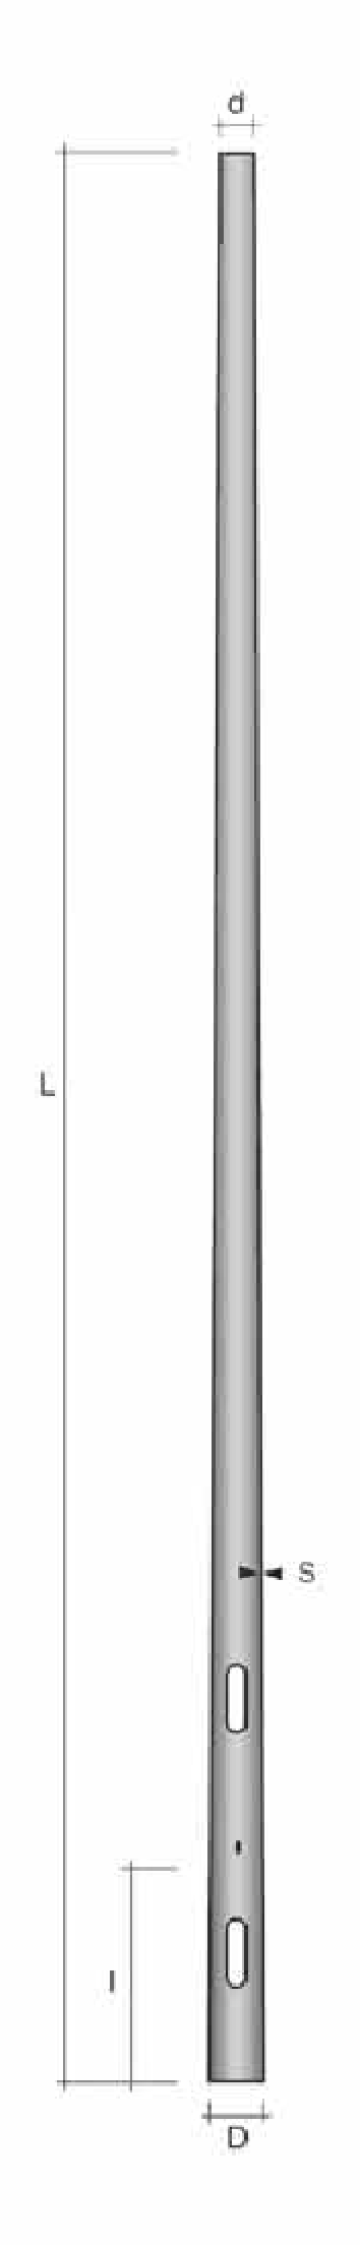 Stalp conic ingropat h=7.8m de la Metalsafe Lighting Srl